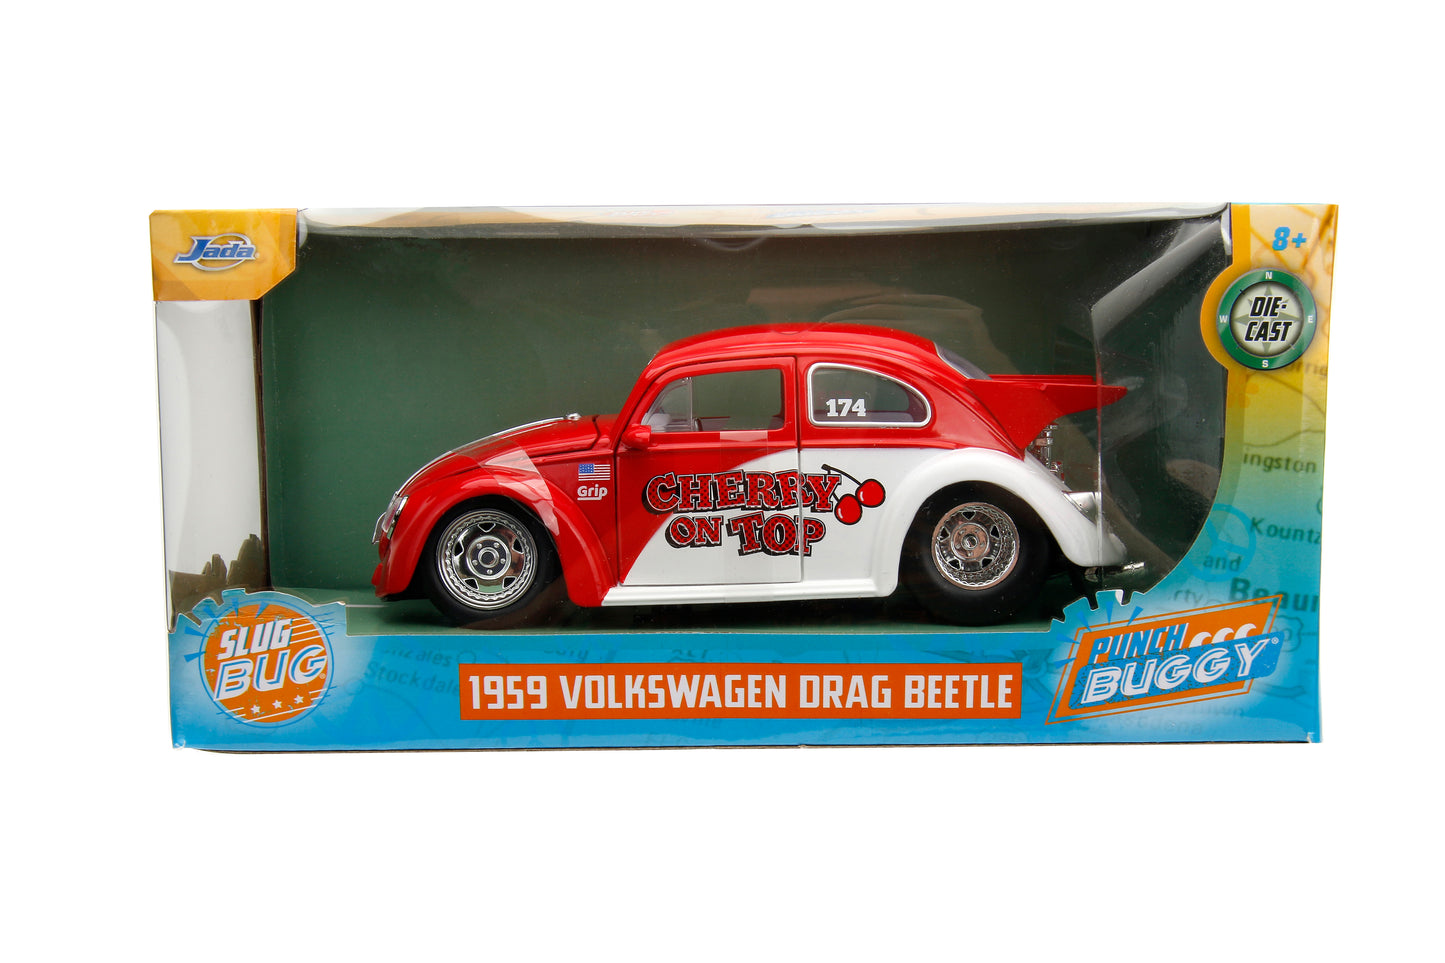 Punch Buggy Slug Bug 1:24 1959 Volkswagen Drag Beetle Die-Cast Car (Red) (This is a Pre Order)